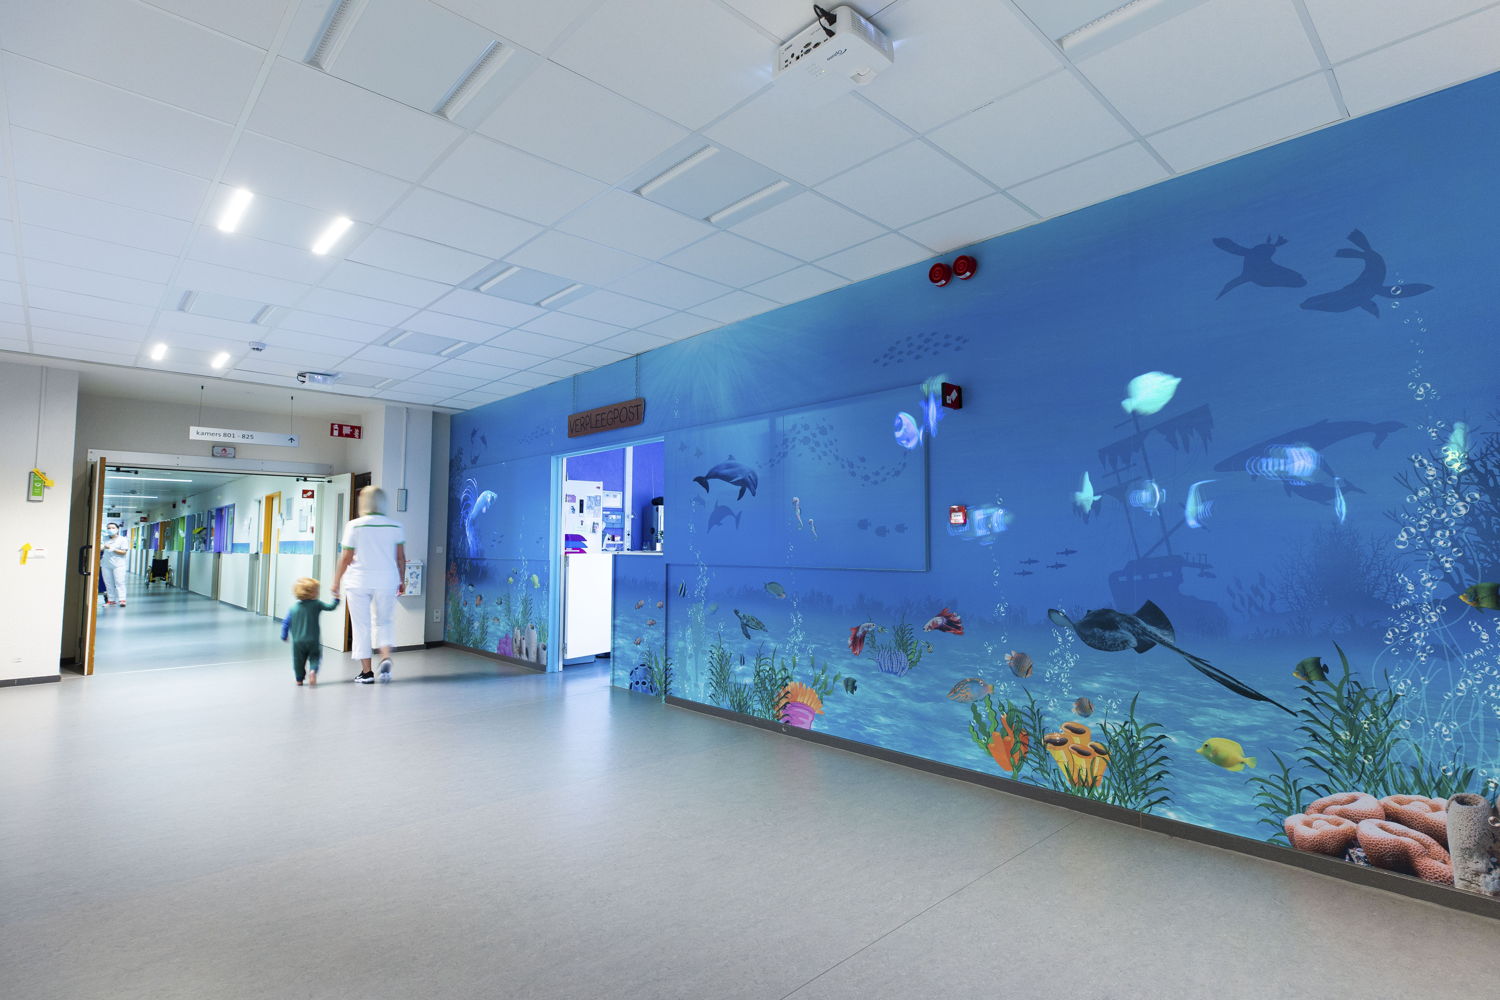 Aan de verpleegpost van ZNA Koningin Paola Kinderziekenhuis projecteert een beamer bewegende beelden van vissen. (Credit: ZNA / Dirk Kestens)